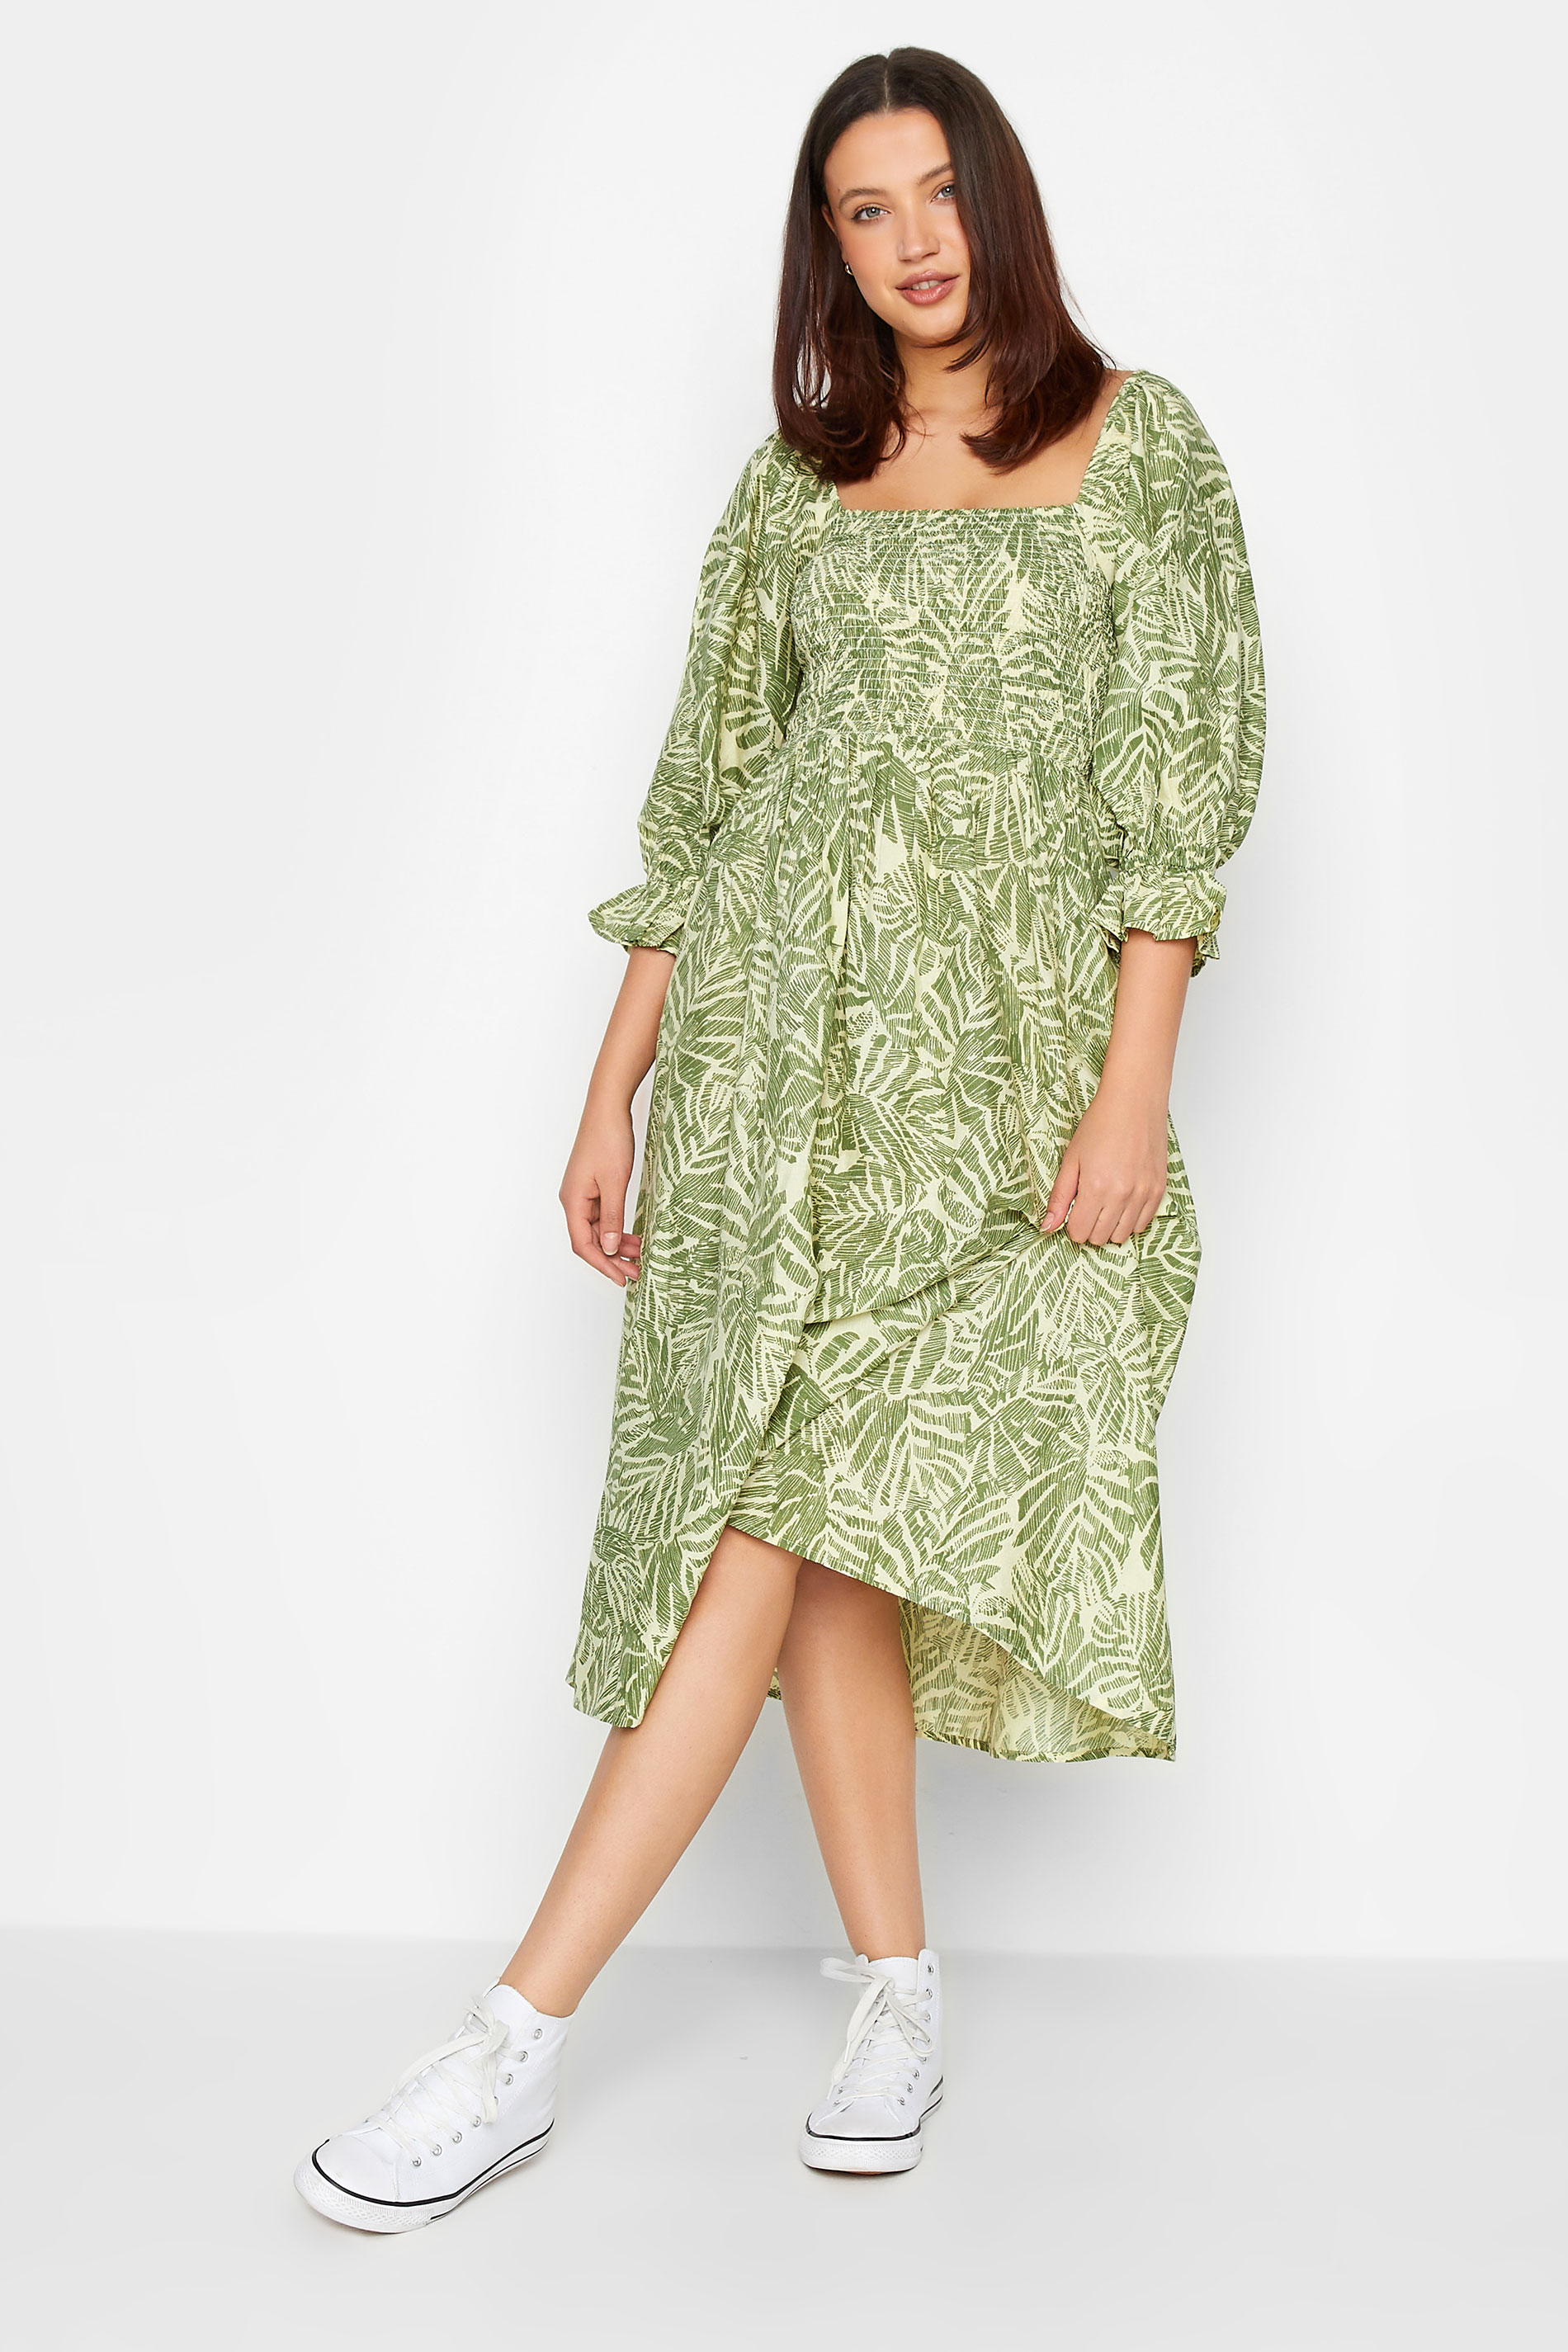 LTS Tall Womens Green Palm Leaf Print Midaxi Dress | Long Tall Sally 2